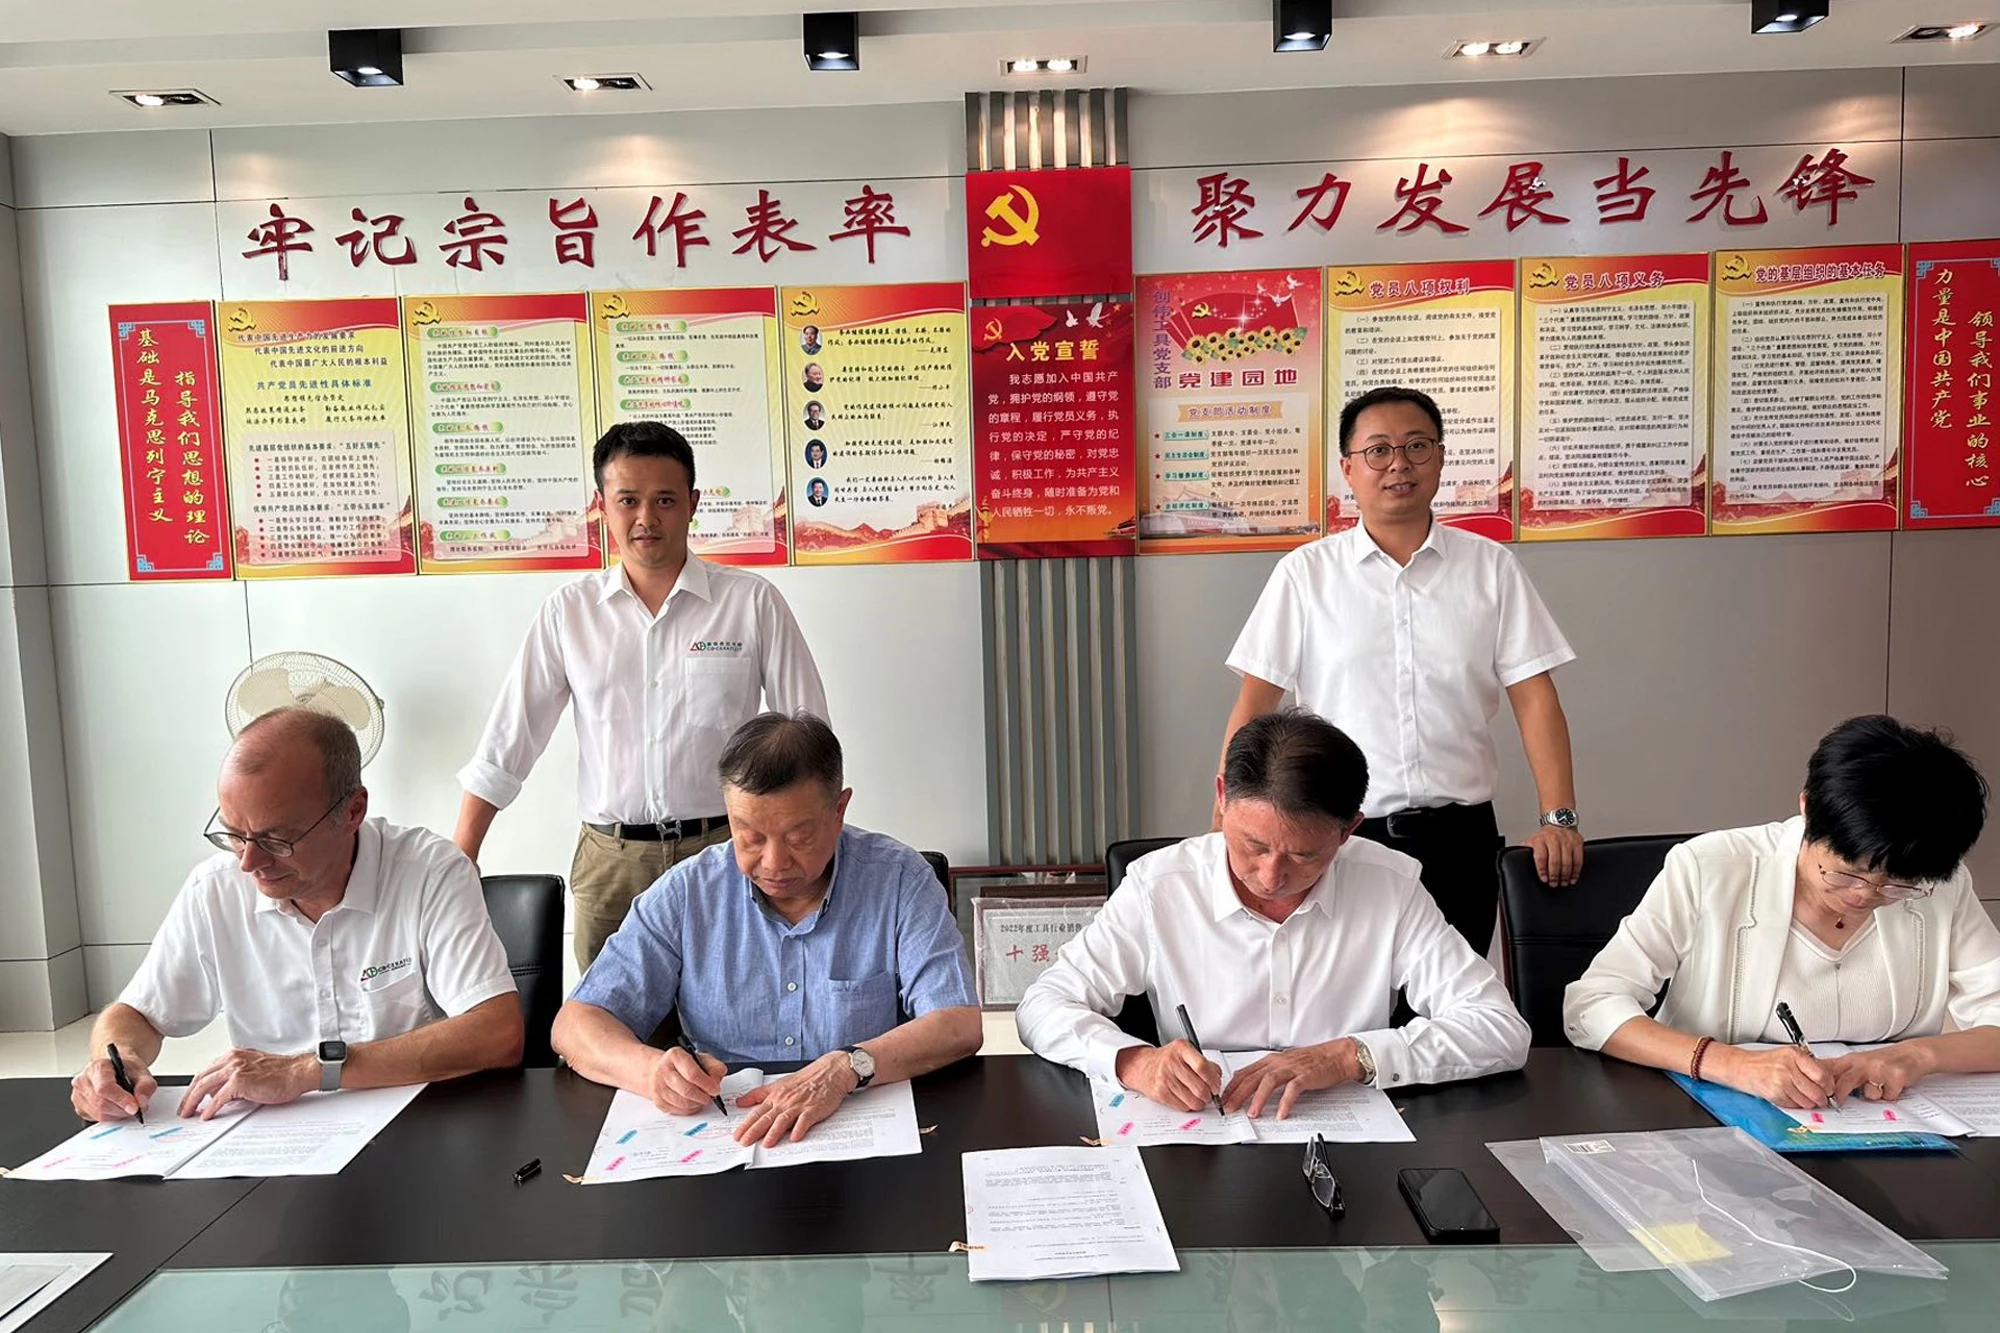 CERATIZIT announces the acquisition of Changzhou CW Toolmaker Inc.